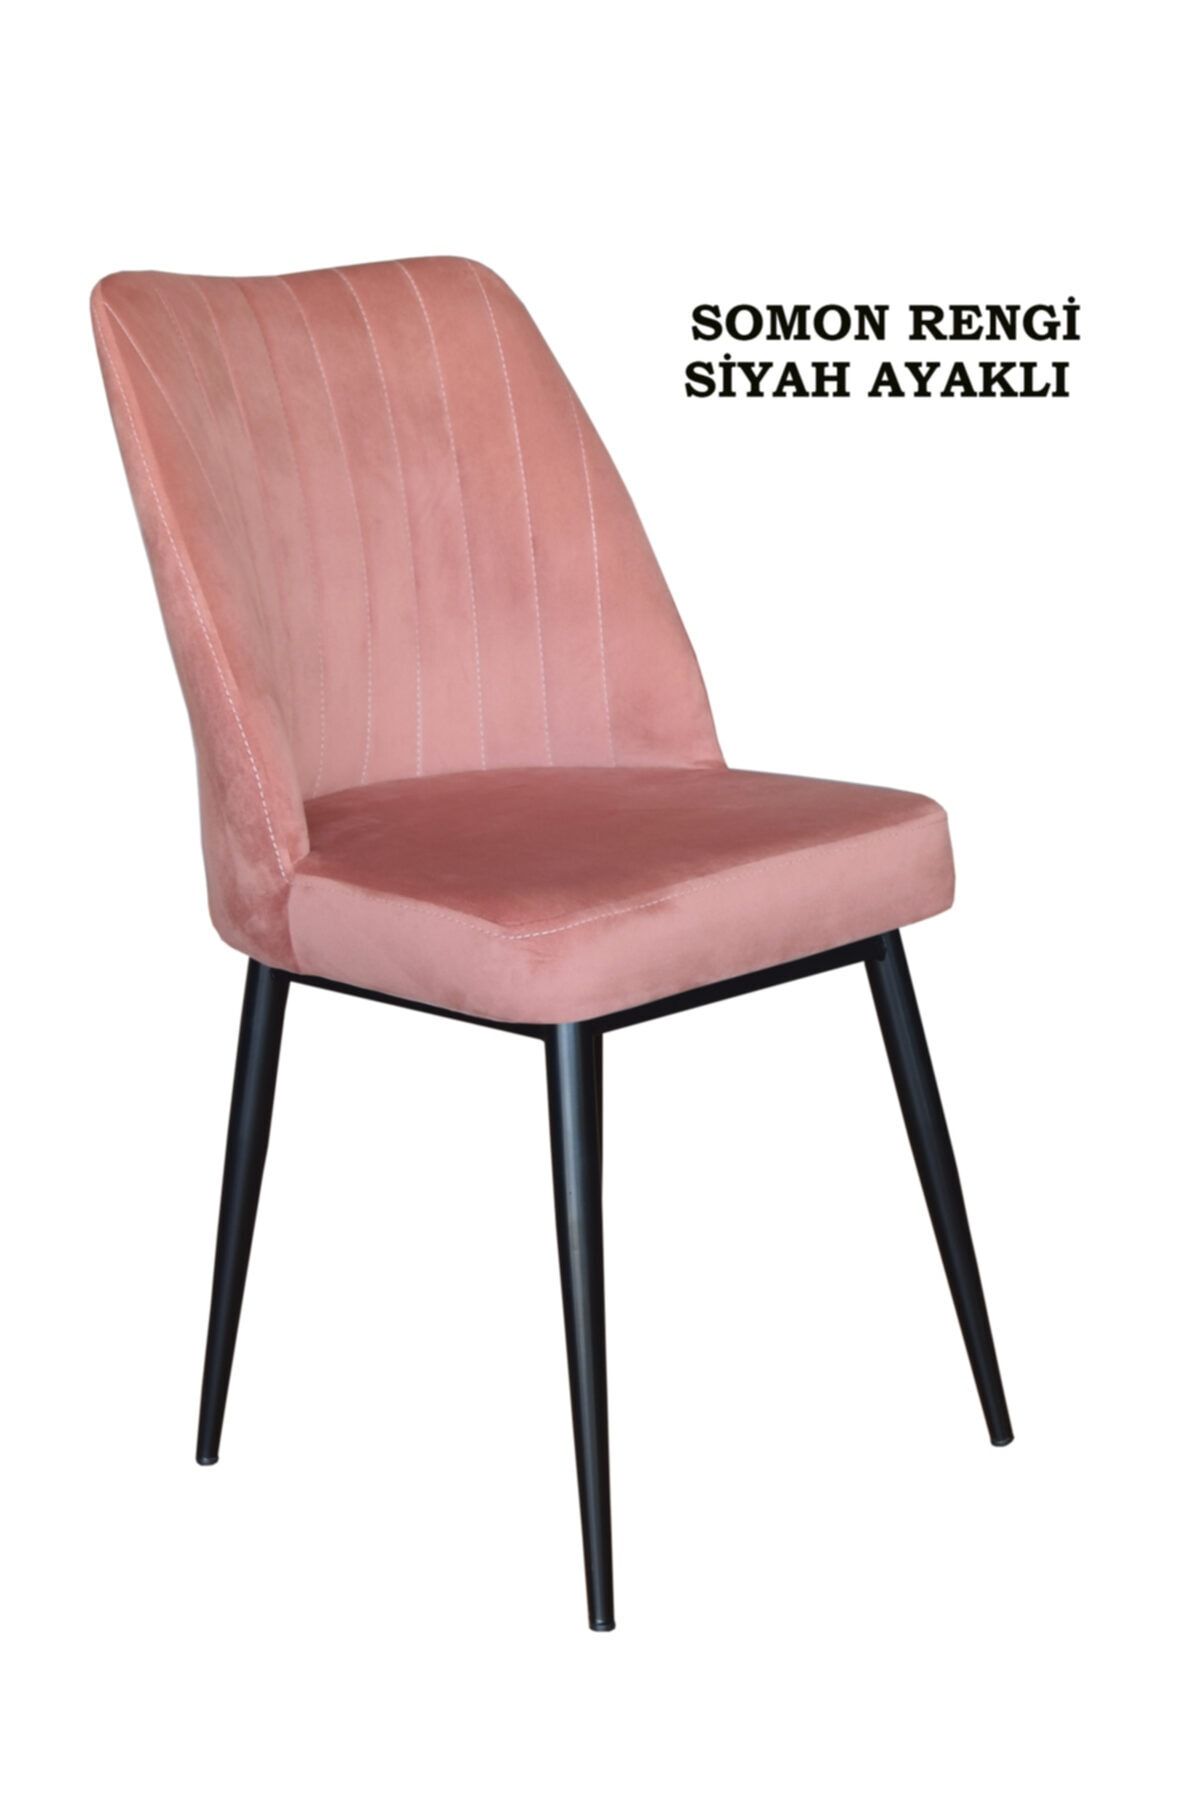 Ankhira Elit Sandalye, Mutfak Ve Salon Sandalyesi, Silinebilir Somon Renk Kumaş, Siyah Ayaklı